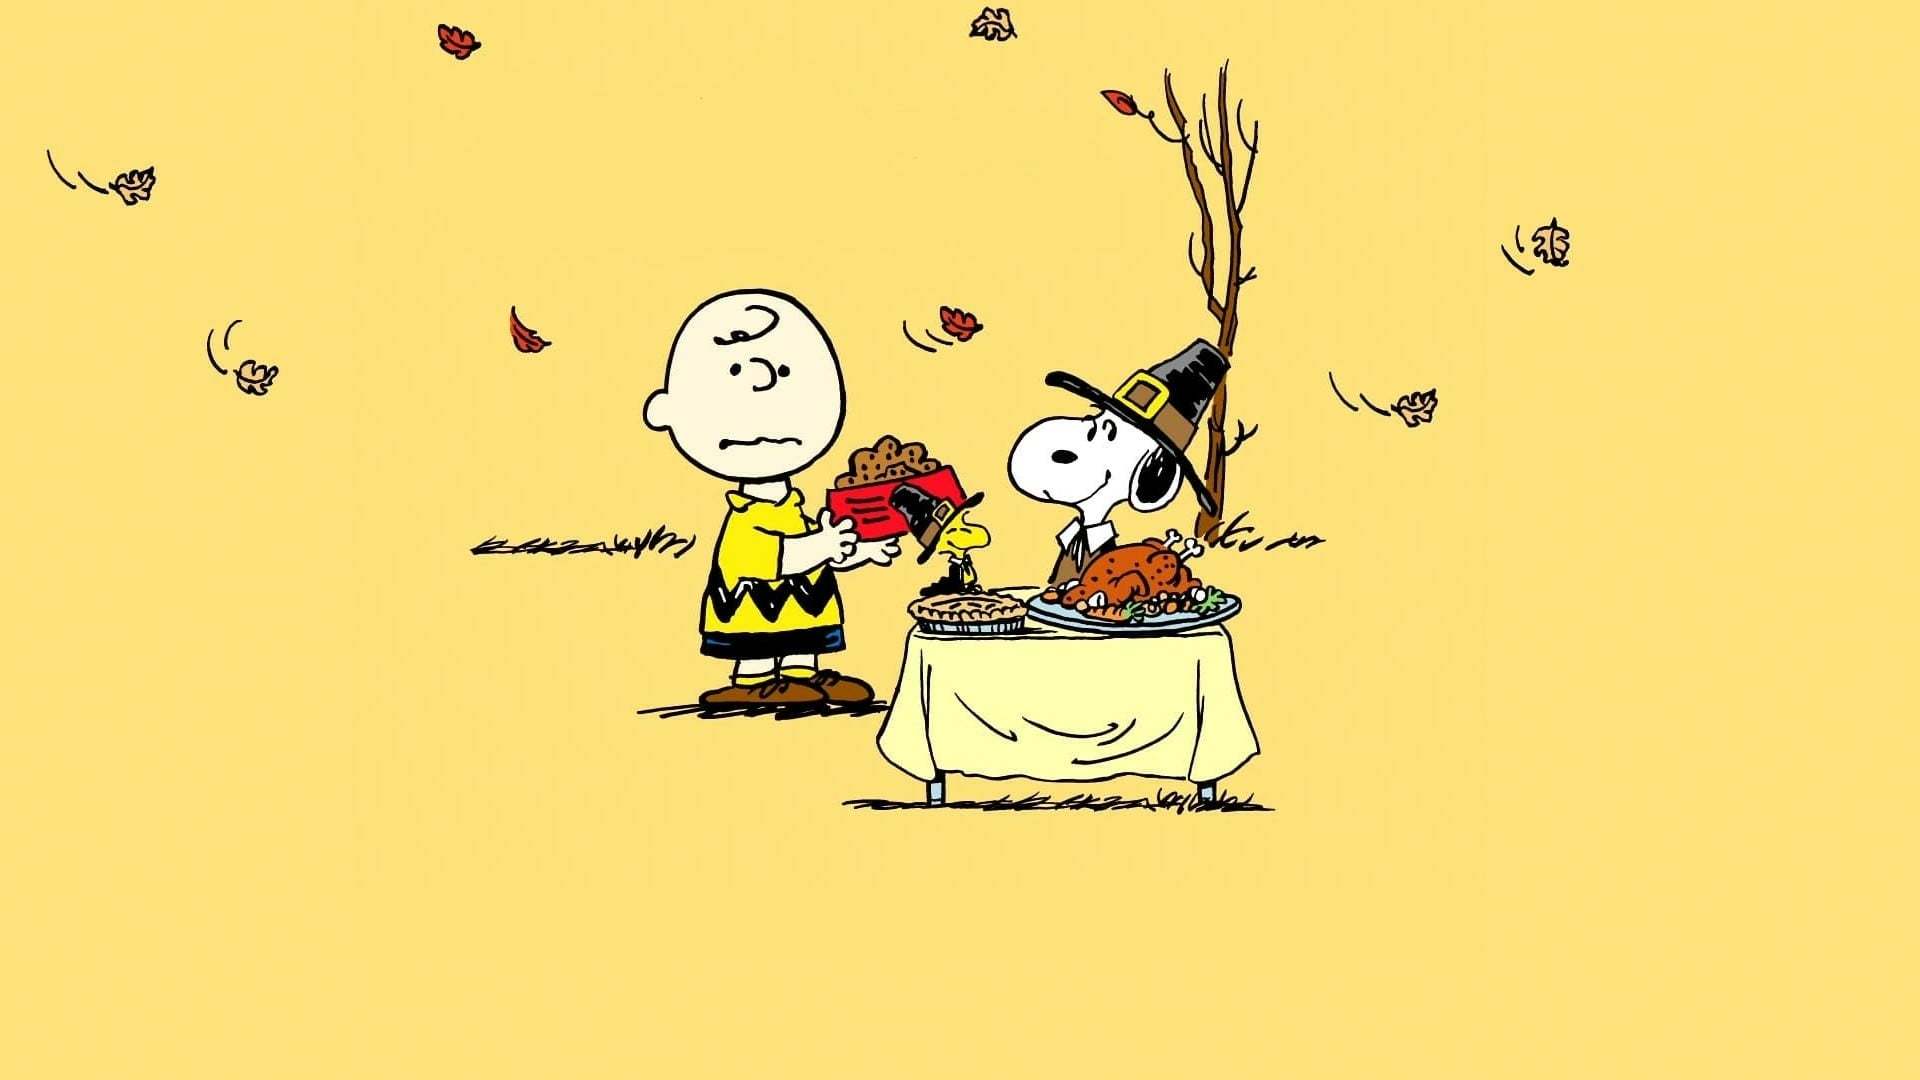 ჩარლი ბრაუნის მადლიერების დღე / A Charlie Brown Thanksgiving